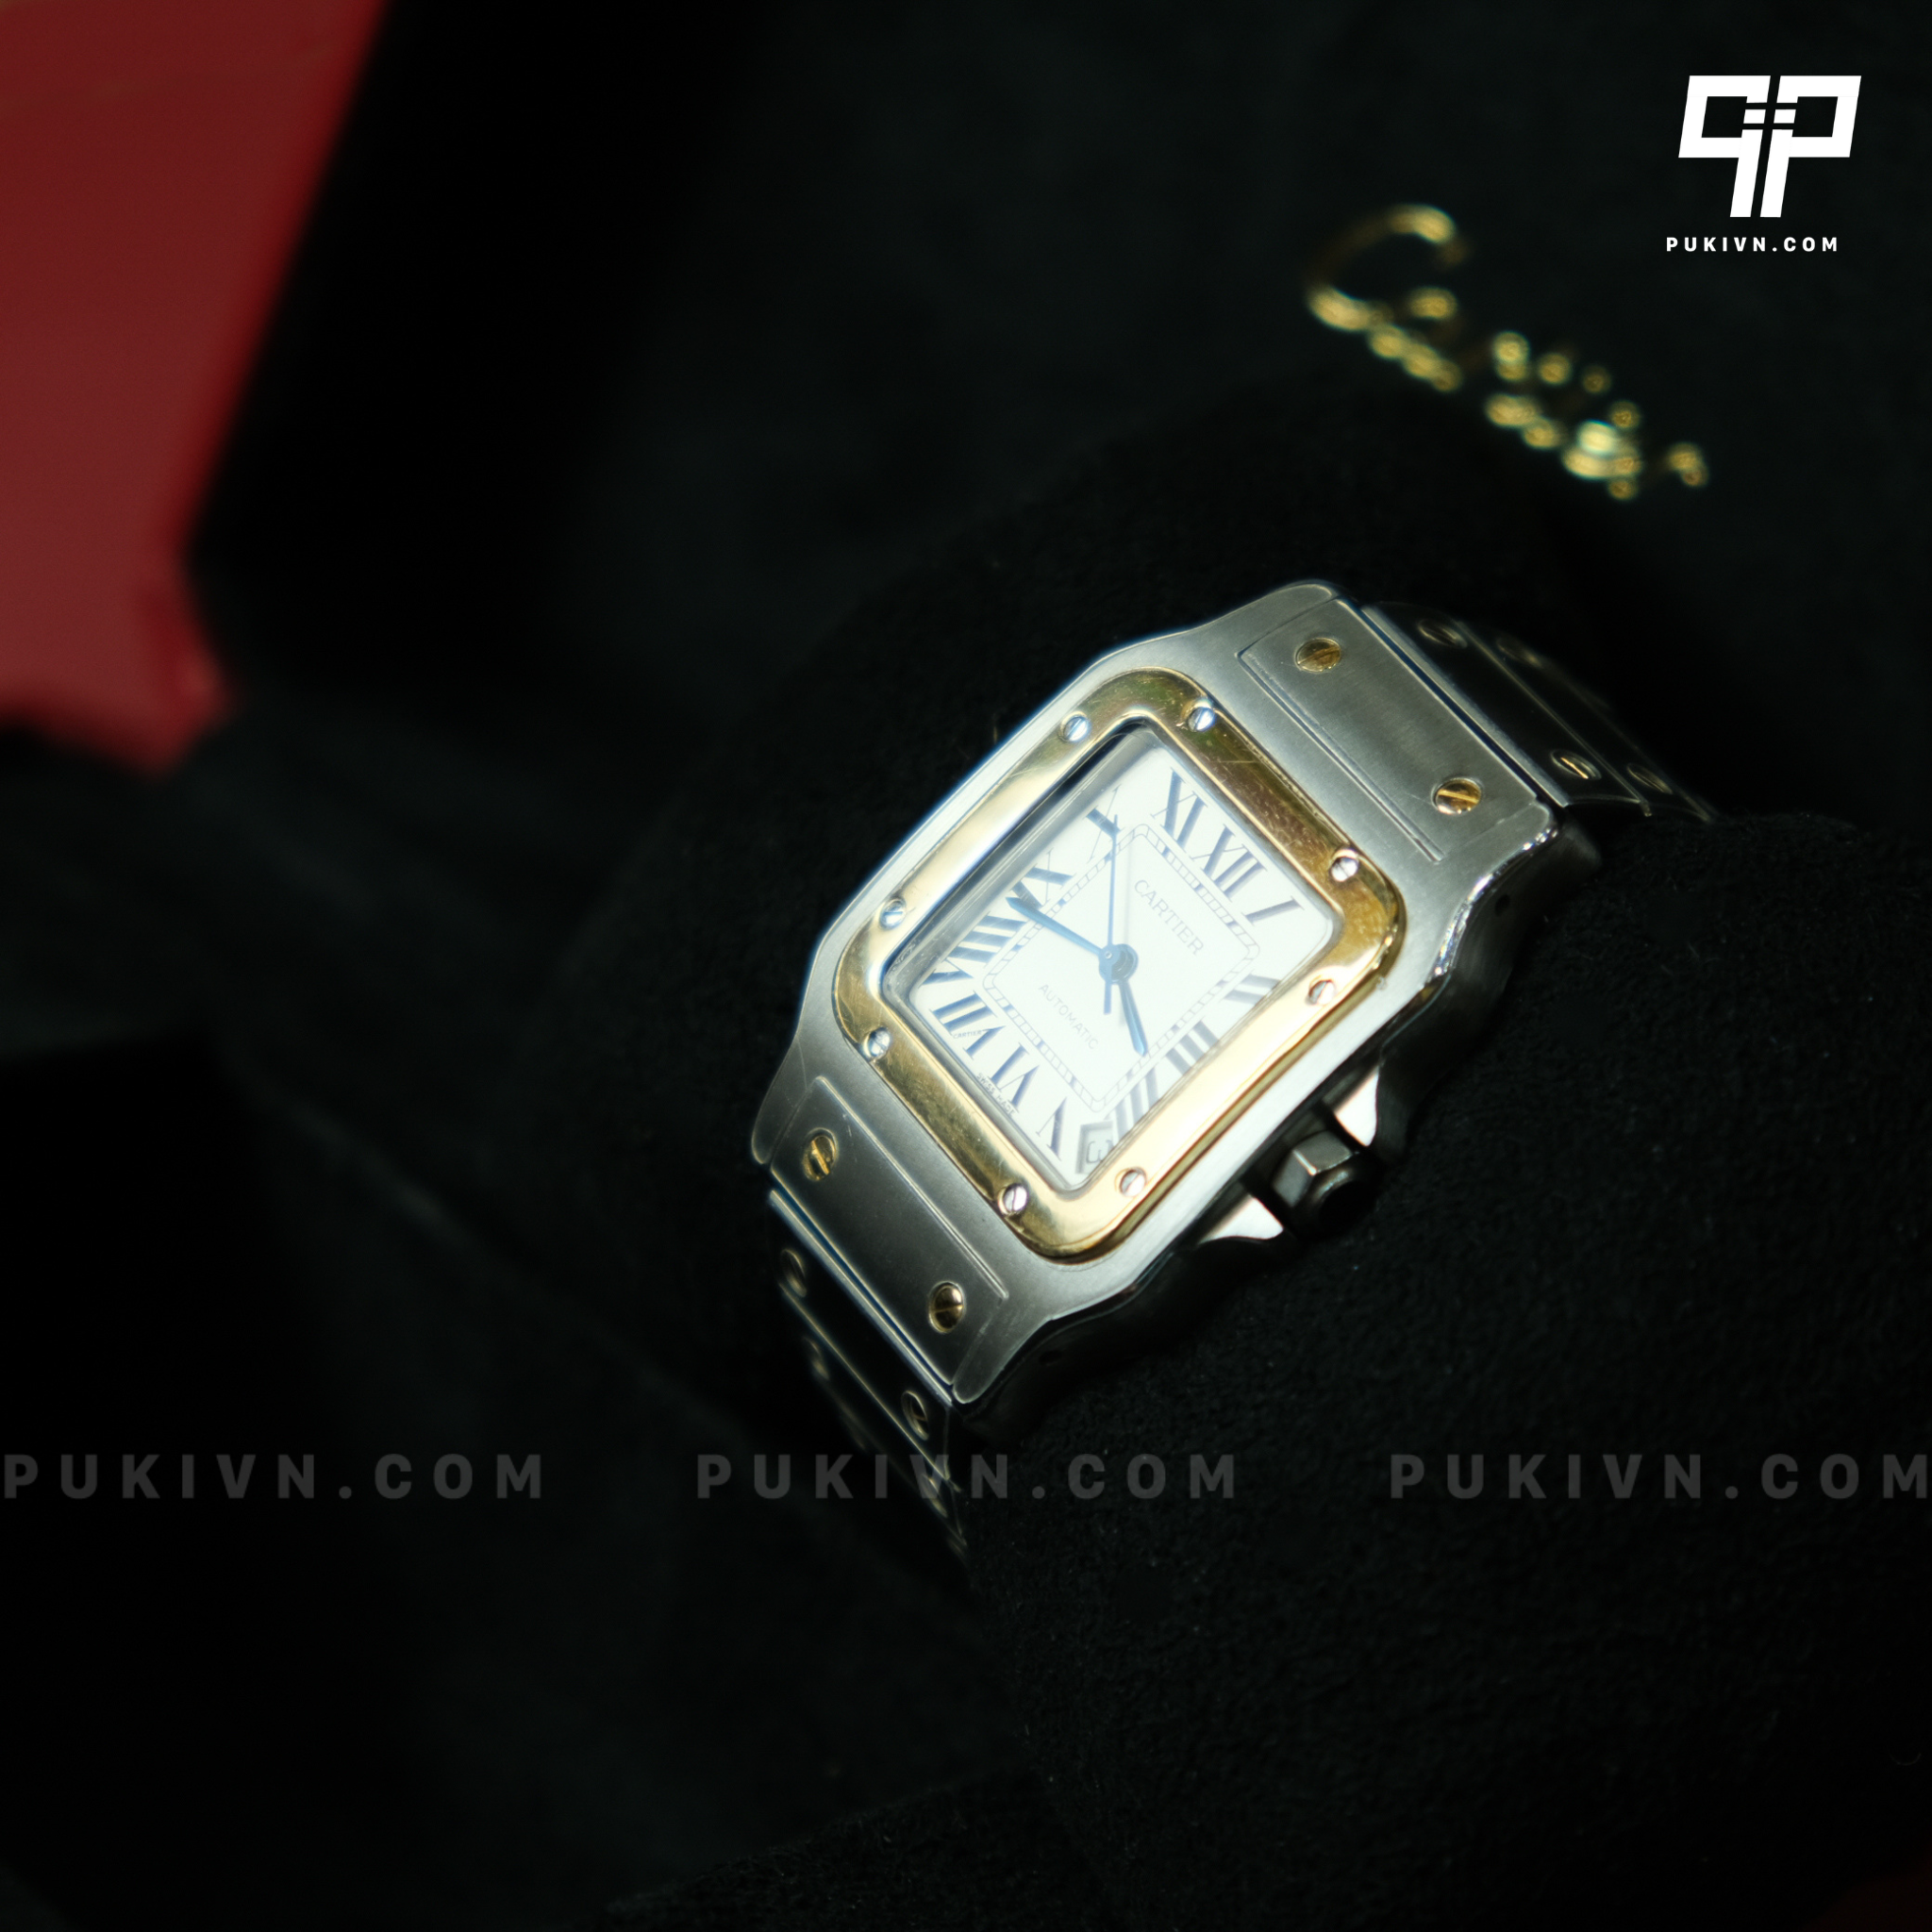 Dán PPF cho đồng hồ Cartier bảo vệ hoàn hảo cho đồng hồ của bạn